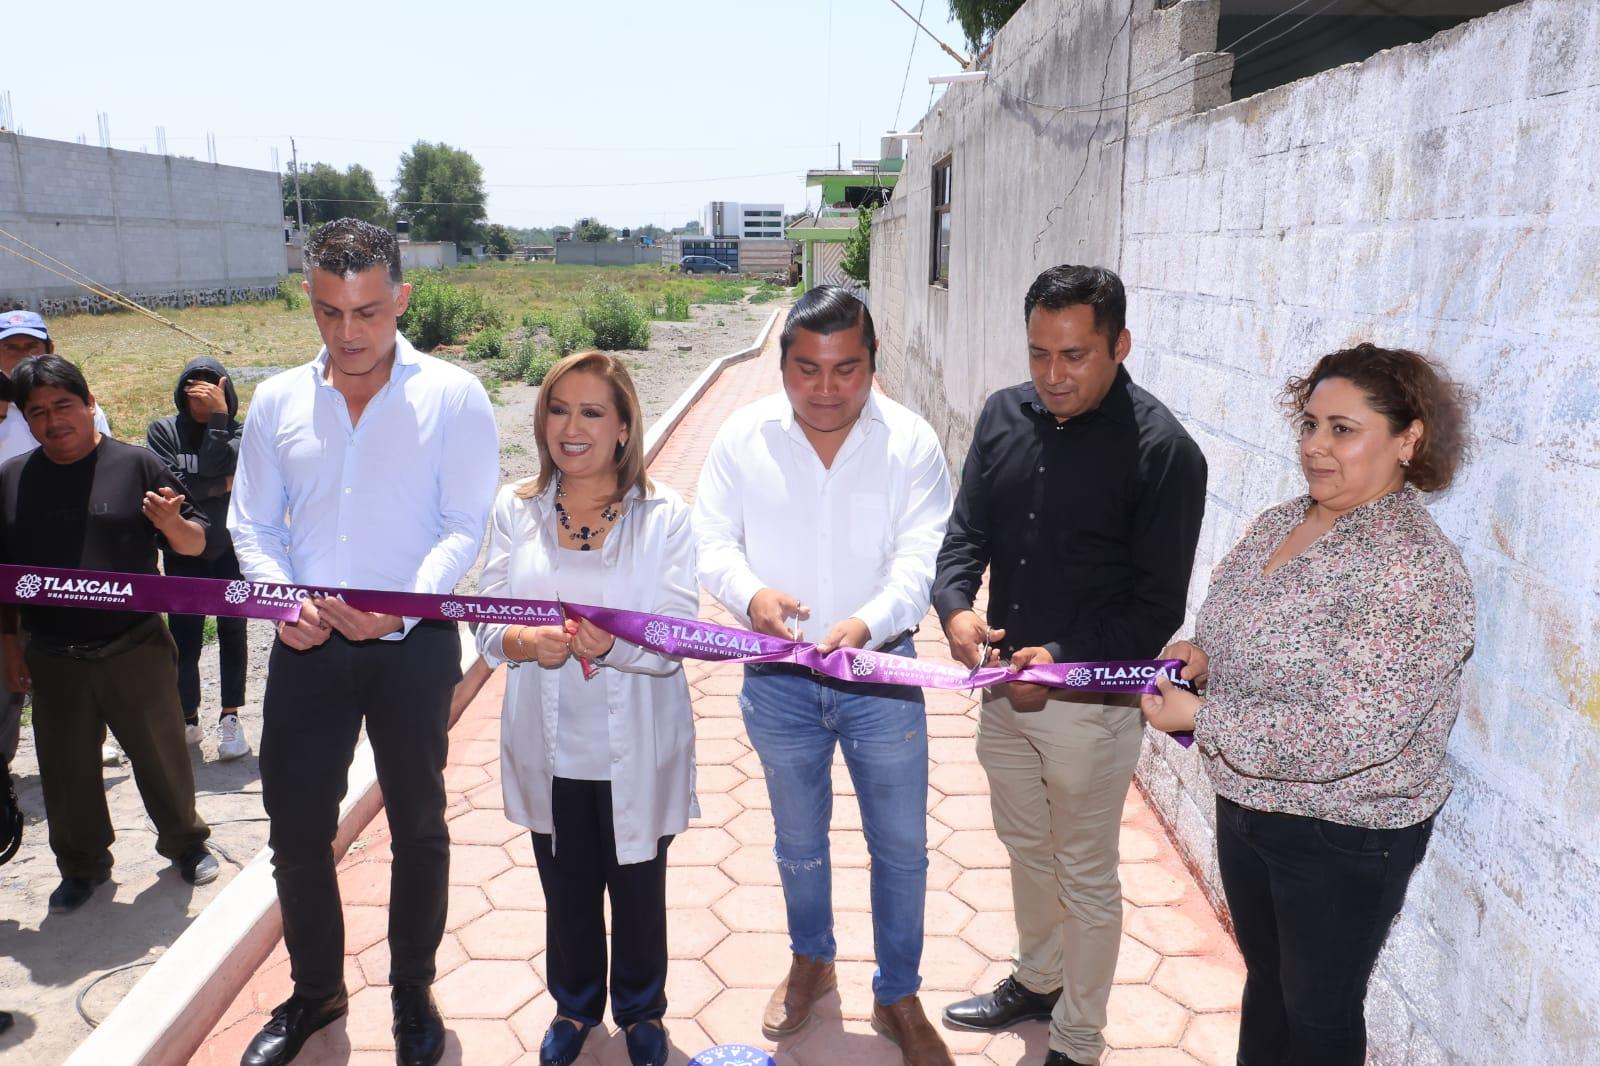 Entregó Gobernadora del estado obra pública en Zacatelco y Ayometla